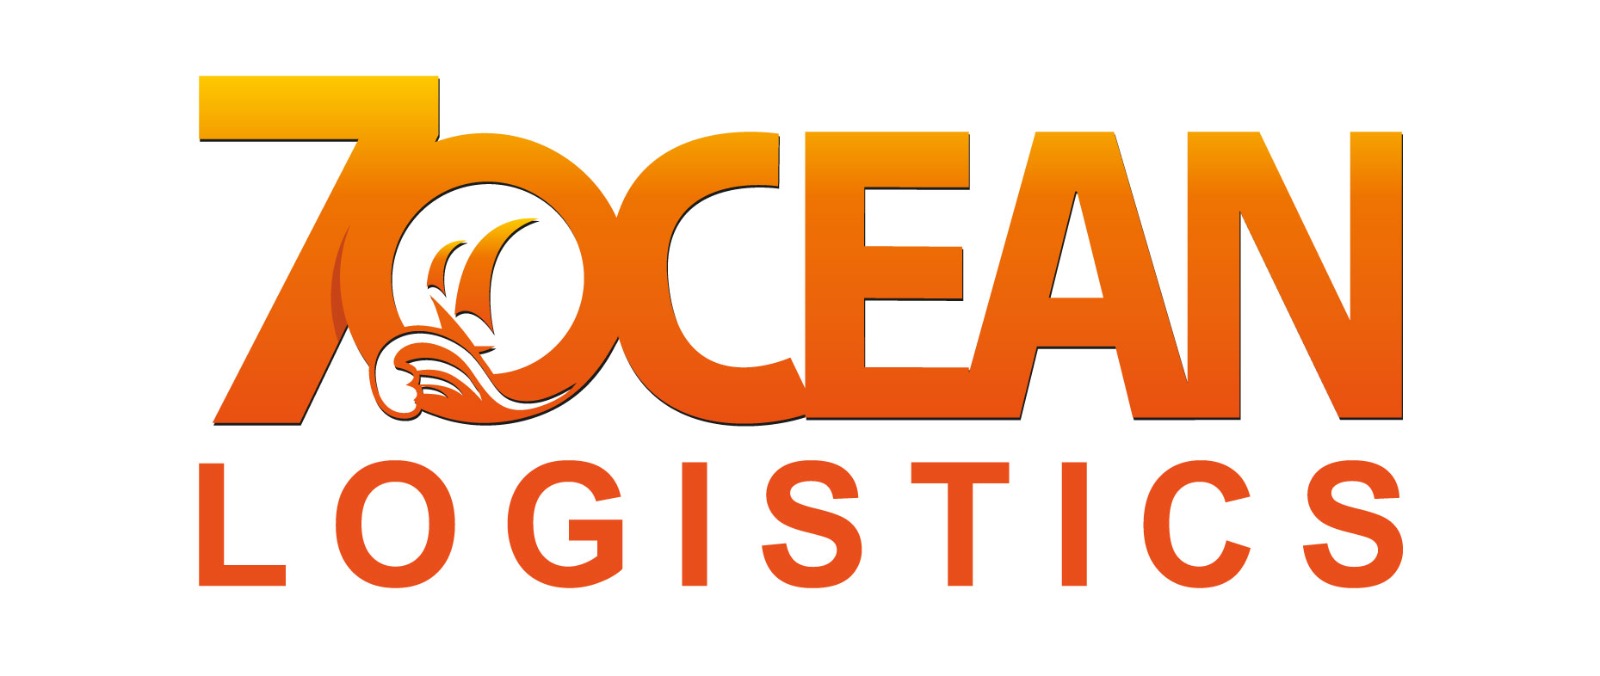 Seven Ocean Logistics Co.,Ltd. logo โลโก้